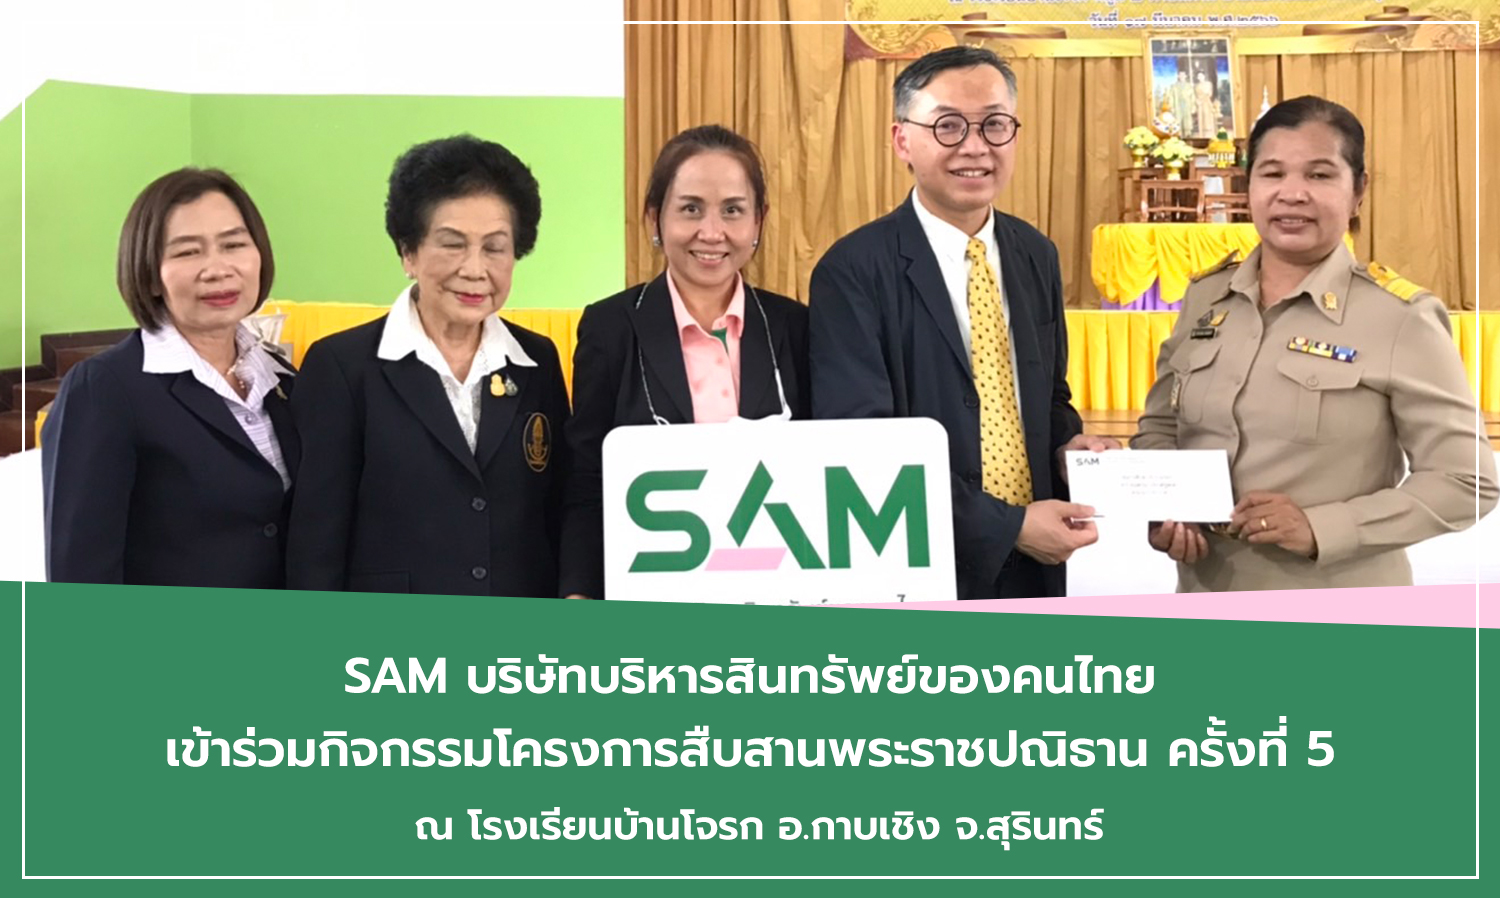 SAM บริษัทบริหารสินทรัพย์ของคนไทย เข้าร่วมกิจกรรมโครงการสืบสานพระราชปณิธาน ครั้งที่ 5 ณ โรงเรียนบ้านโจรก อ.กาบเชิง จ.สุรินทร์